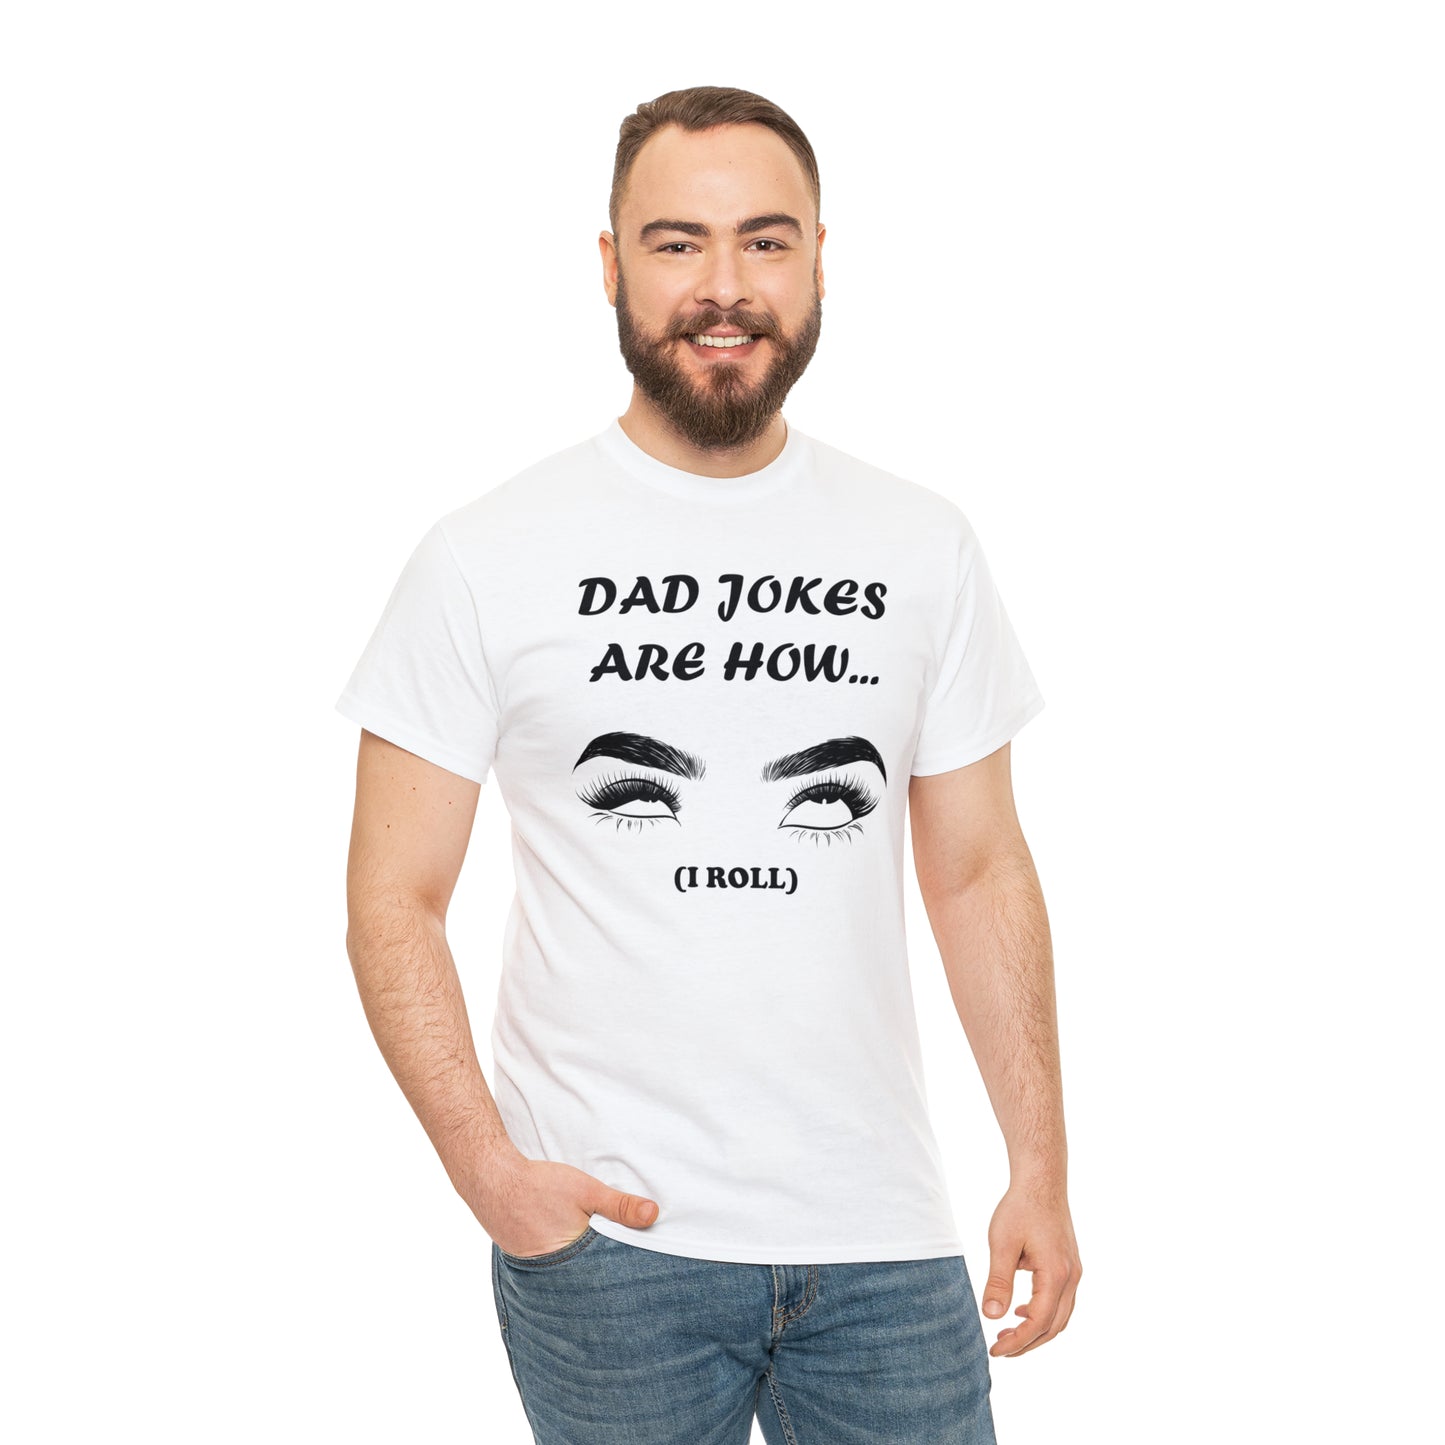 Flirty Fathers Day T-shirt